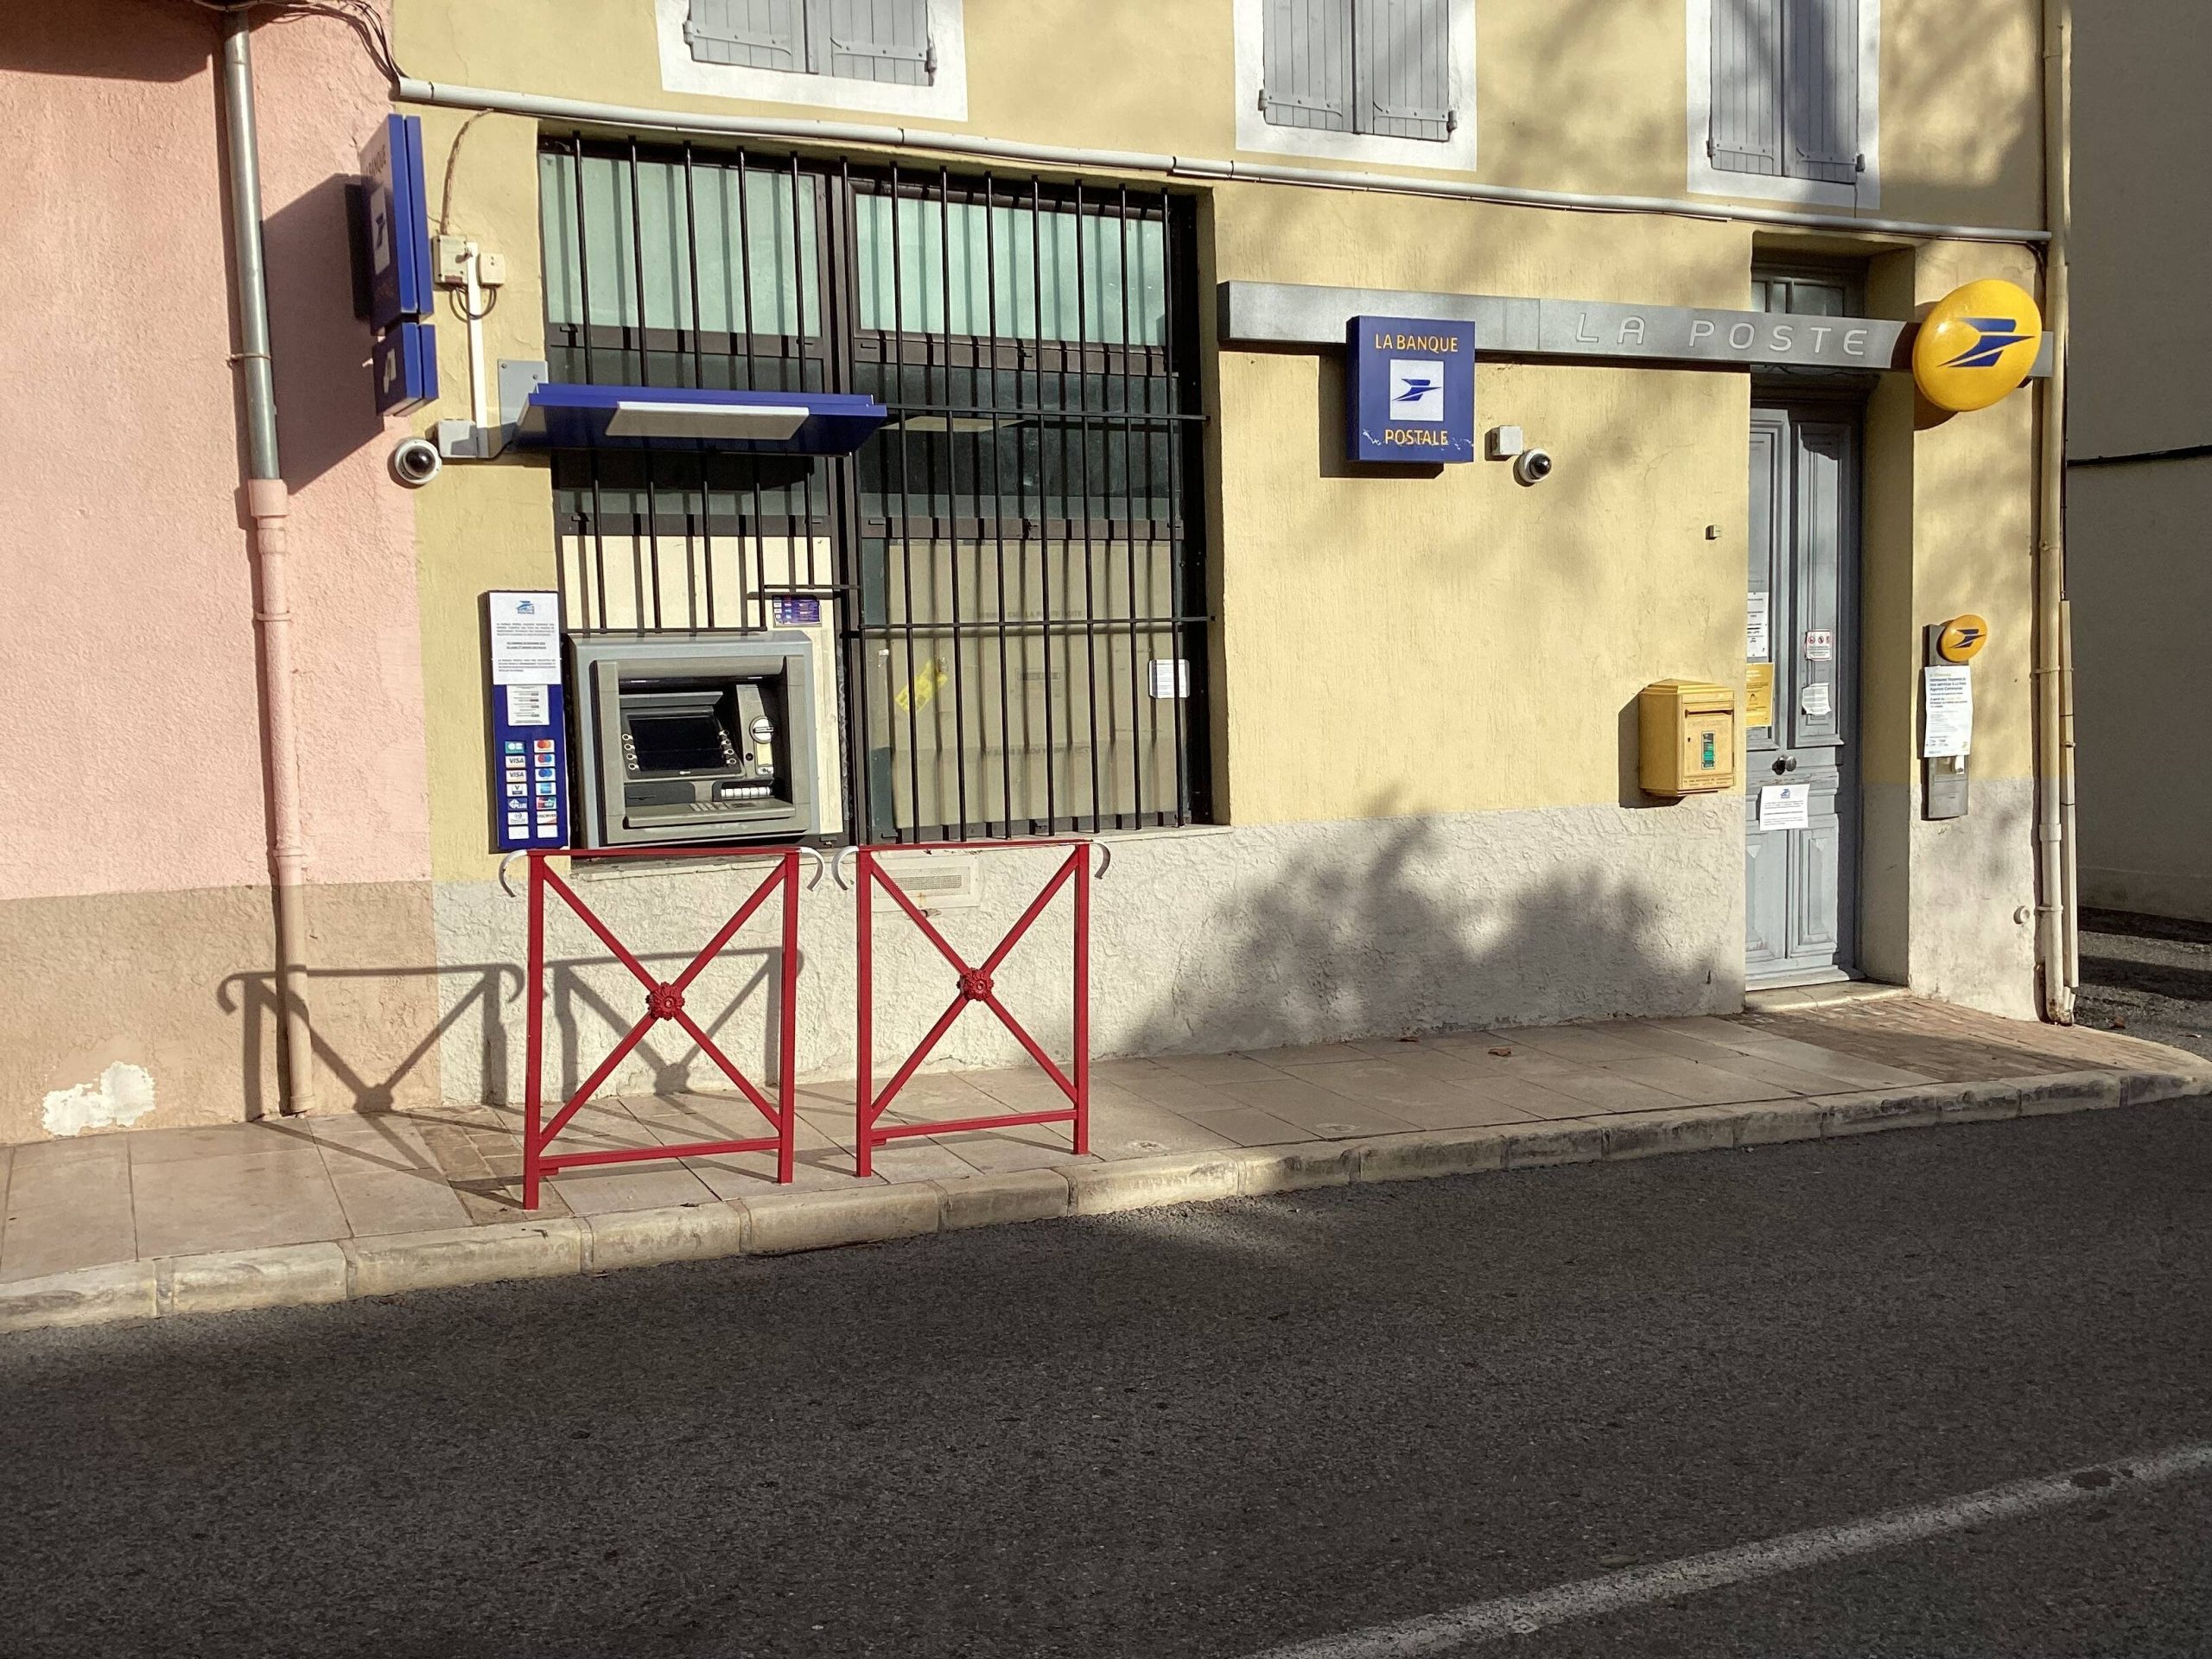 Le bureau de poste ferme, la mairie de Villecroze prend le relais